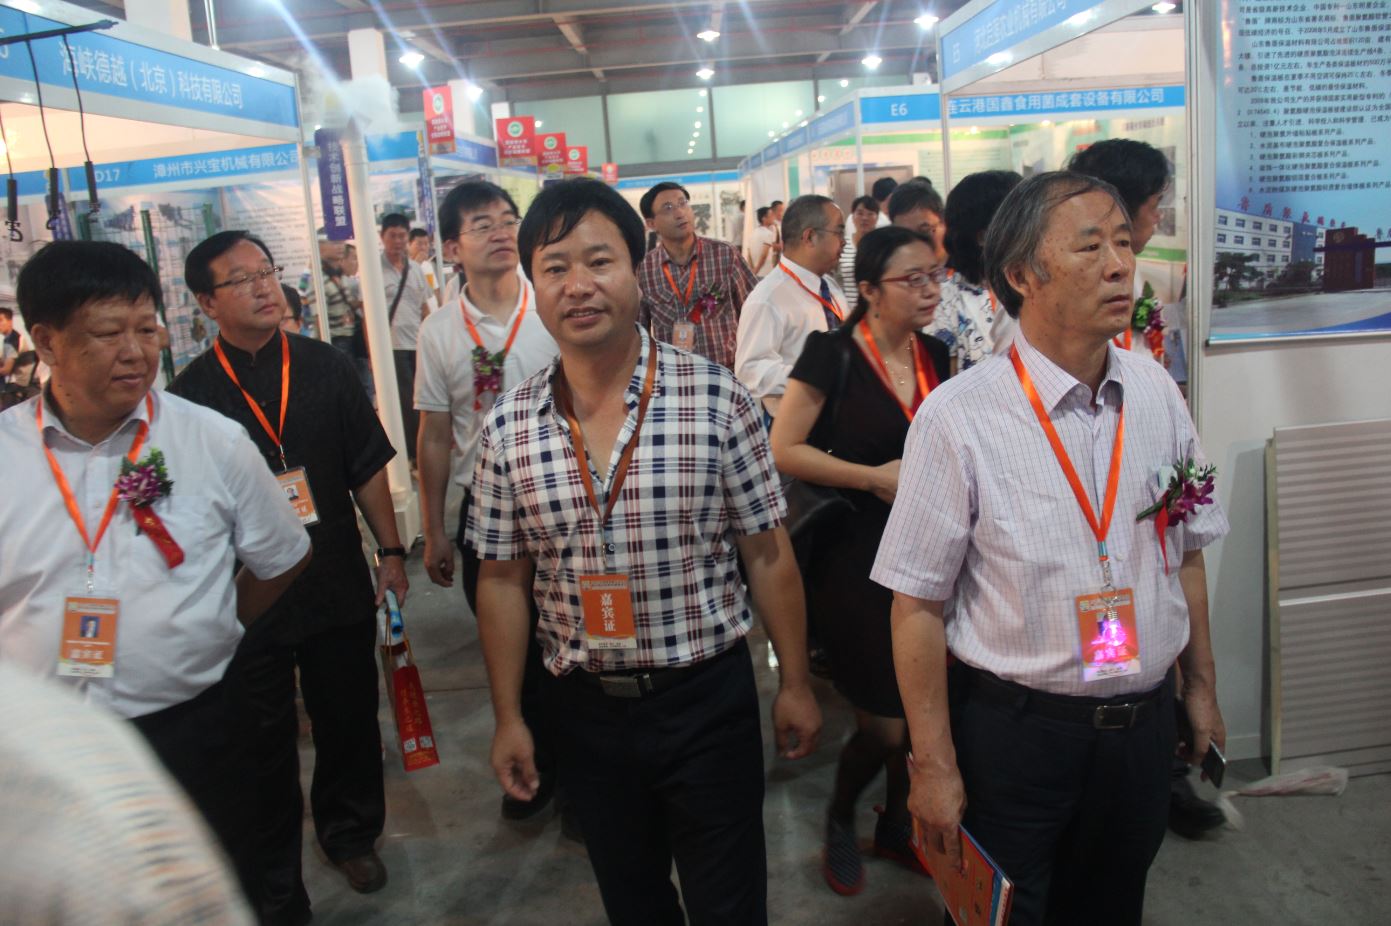 2015 中国食用菌产业年会暨第二届中国食用菌博览会-张东平经理和其它嘉宾参观展位.JPG